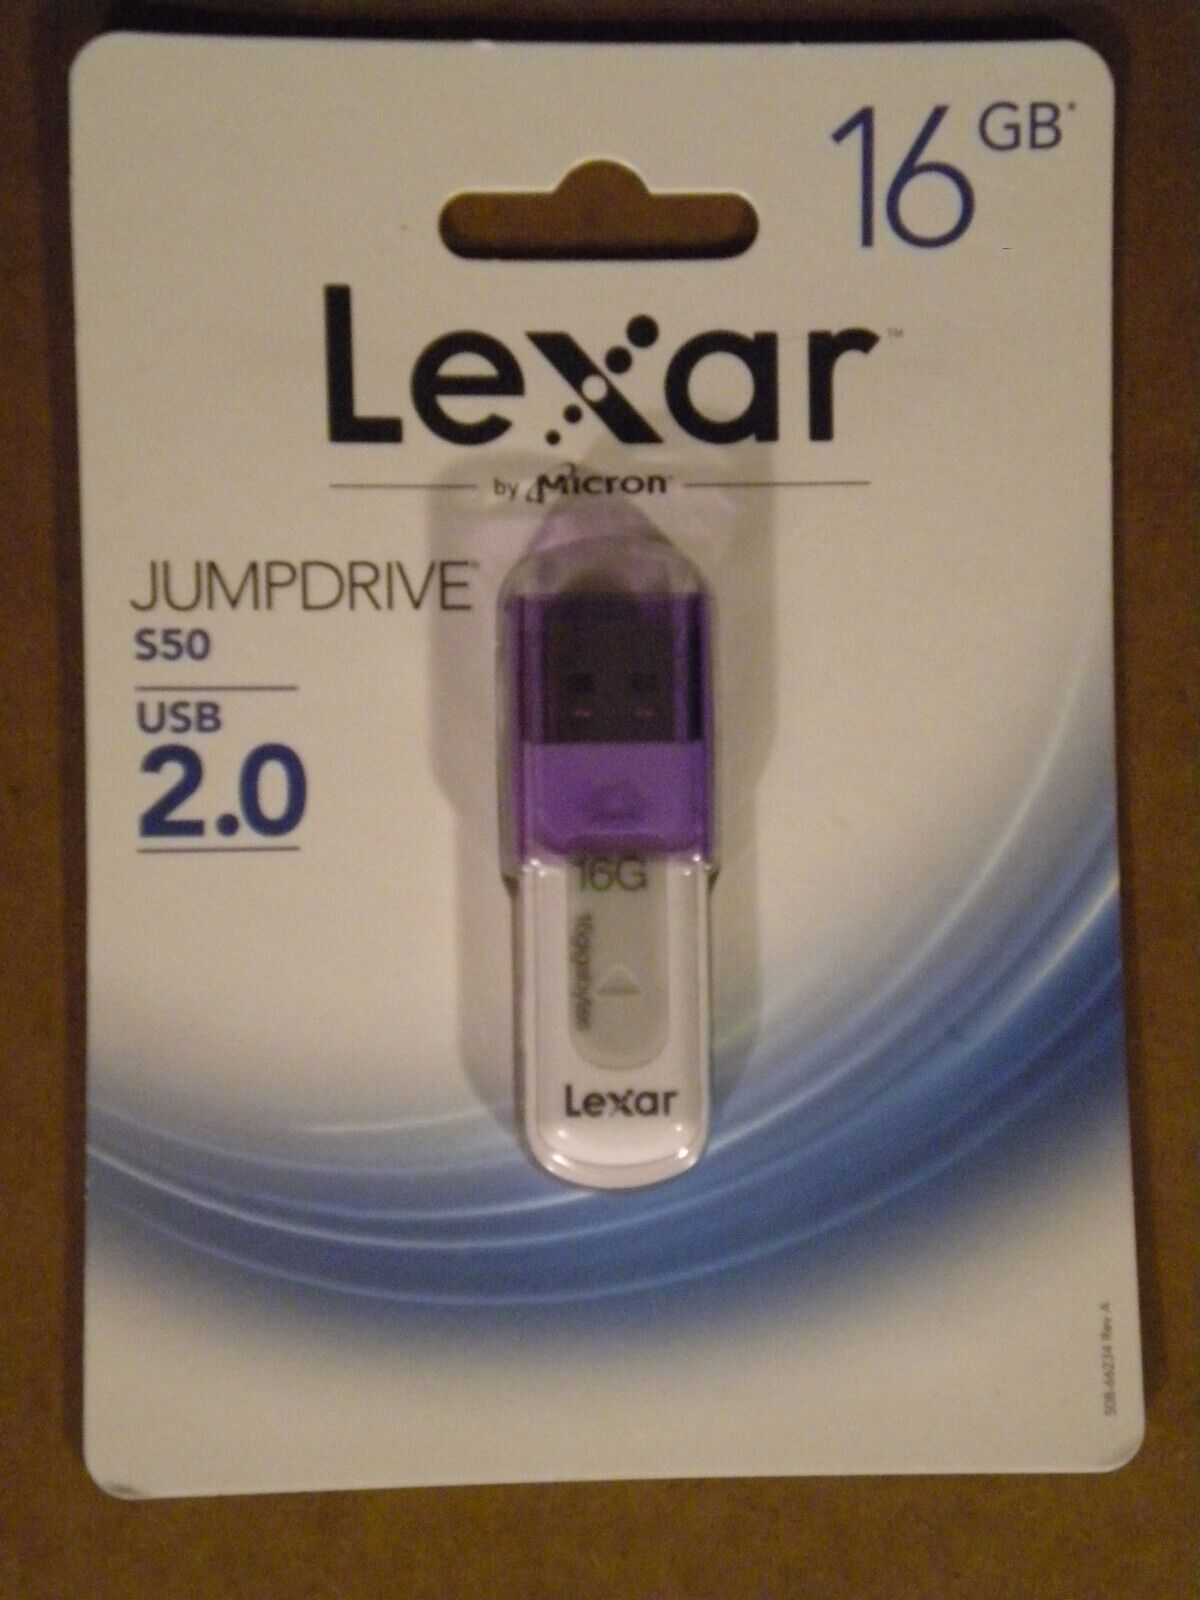 Lexar 16GB USB 2.0 Jumpdrive S50 LJDS50-16GABNLV, 50% off second unit